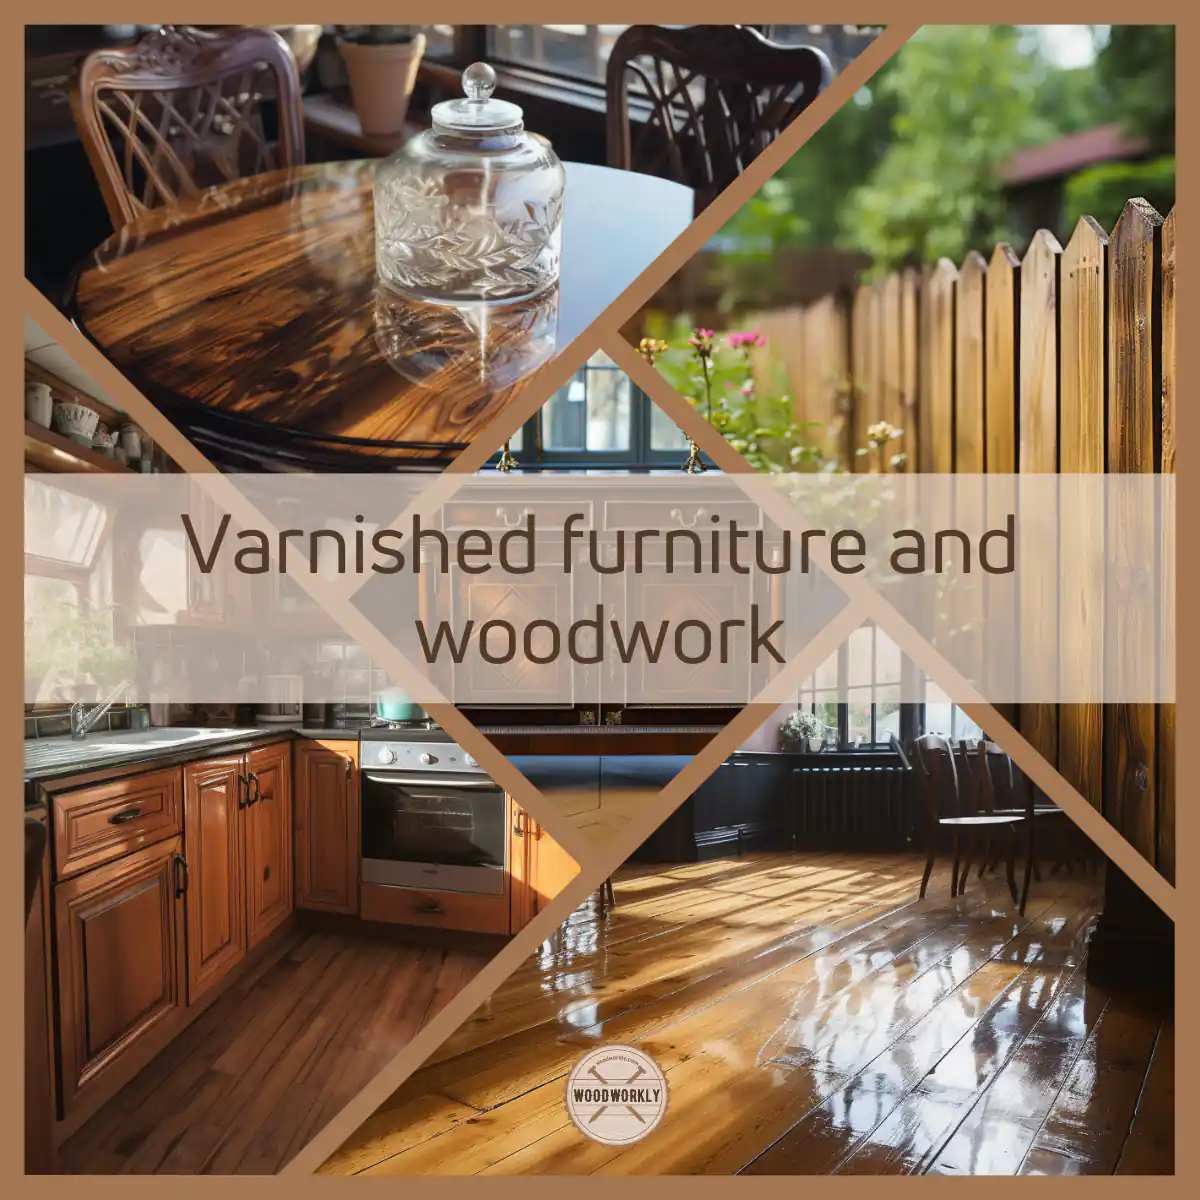 Varnished furniture and woodwork